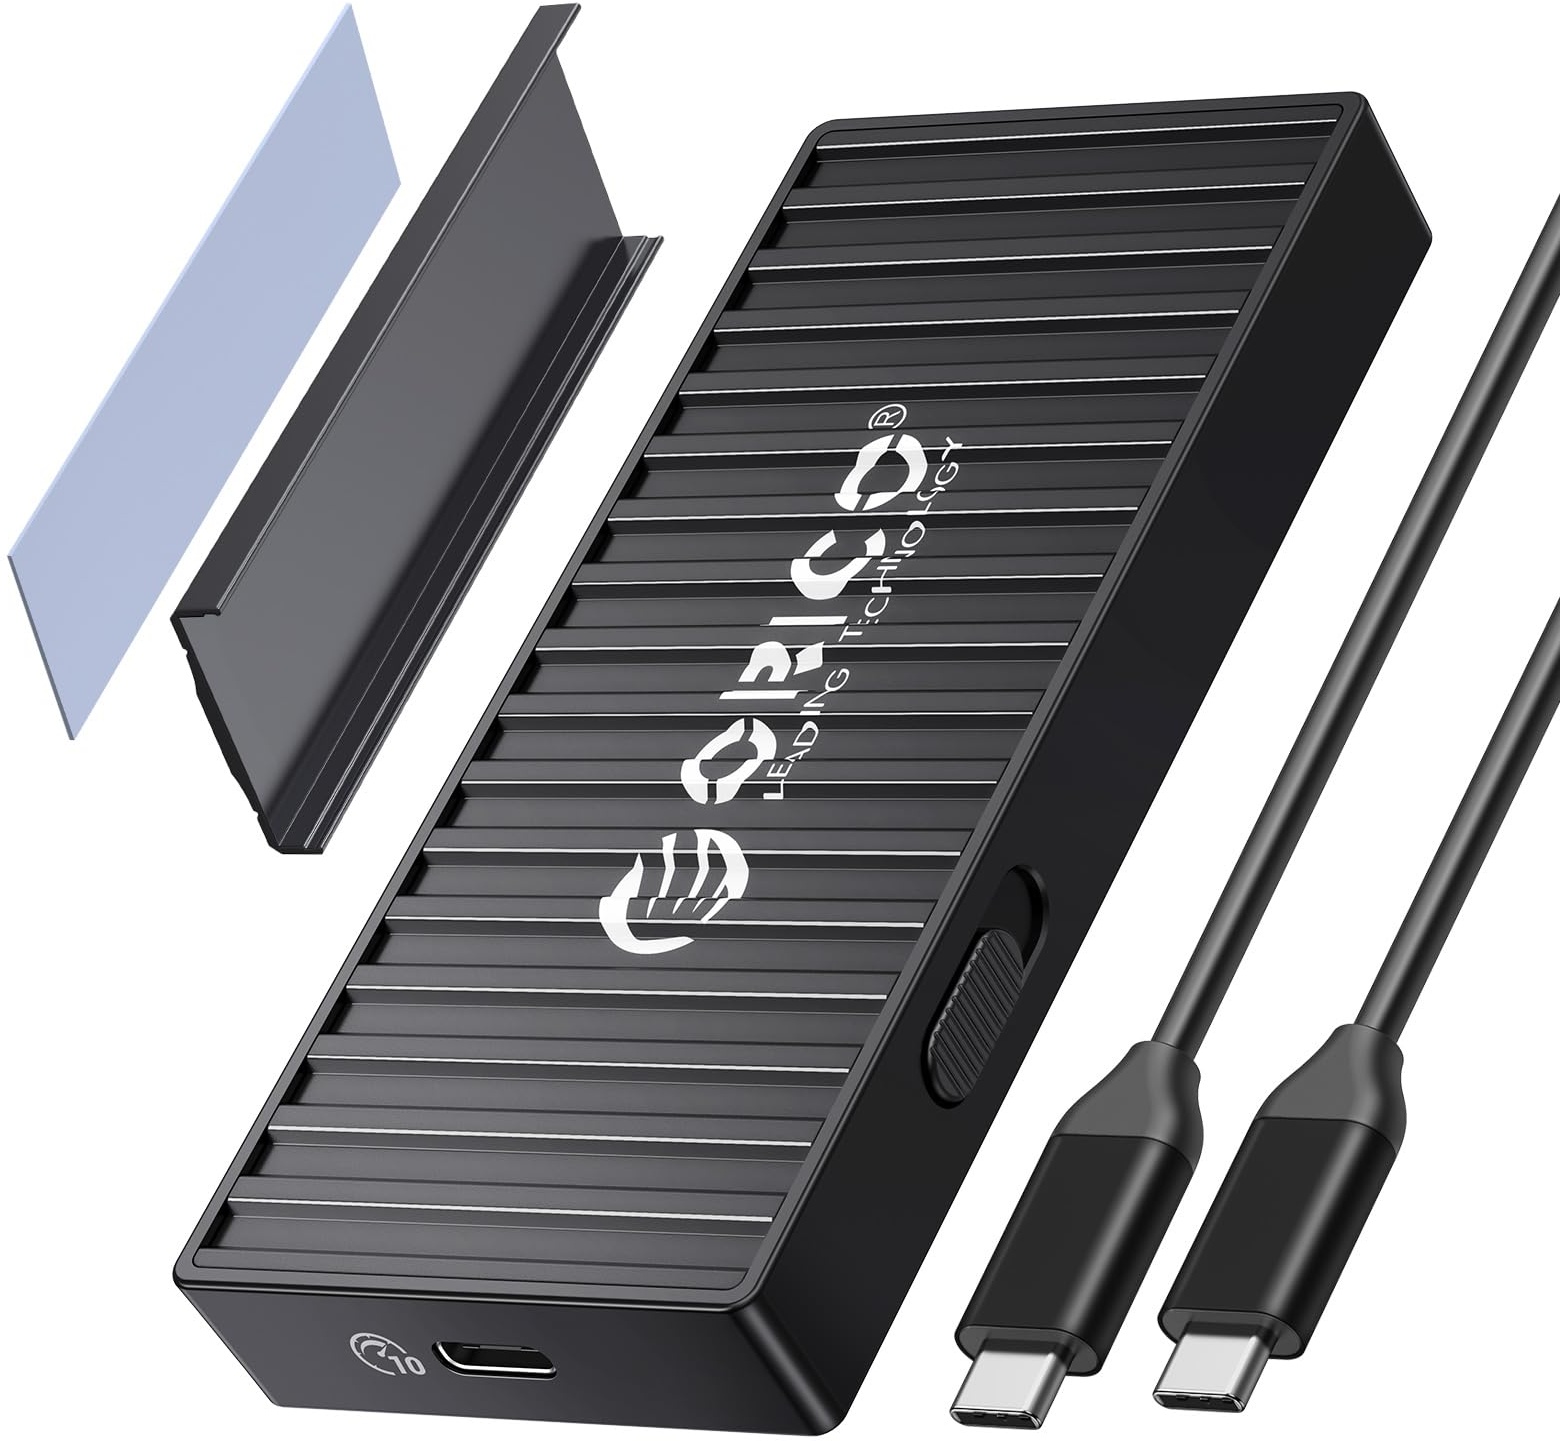 ORICO M.2 NVMe SSD Gehäuse Adapter Werkzeugfreier, USB 3.2 Gen2 USB C 10Gbps M2 PCIe NVM Externes Case mit 4TB Kapazität für M2 M-Key/M+B Key 2230/2242/2260/2280 SSD mit UASP, Trim (10Gbps-Schwarz)